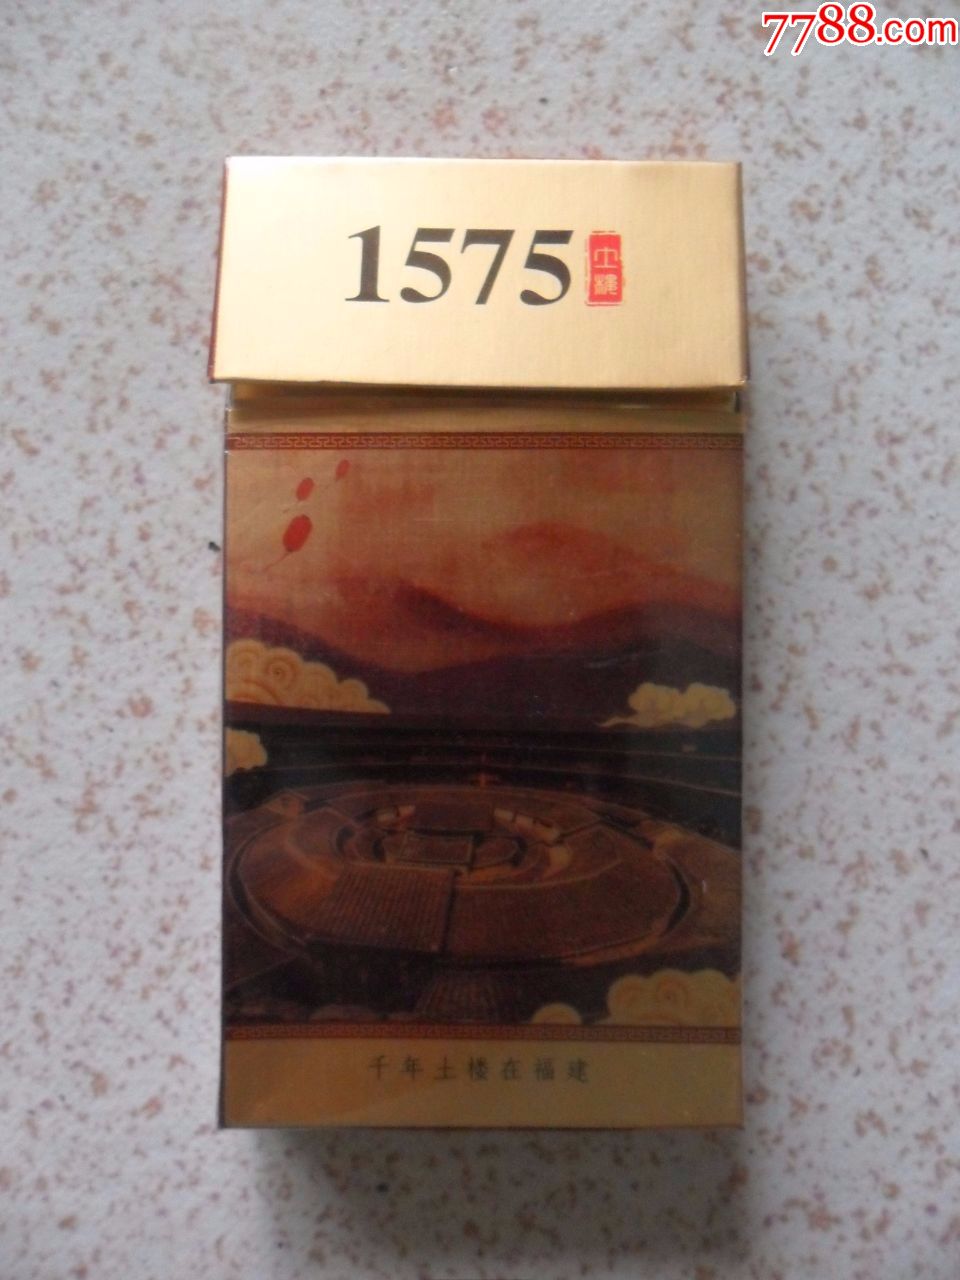 1575千年土楼烟标-se60619316-烟标/烟盒-零售-7788